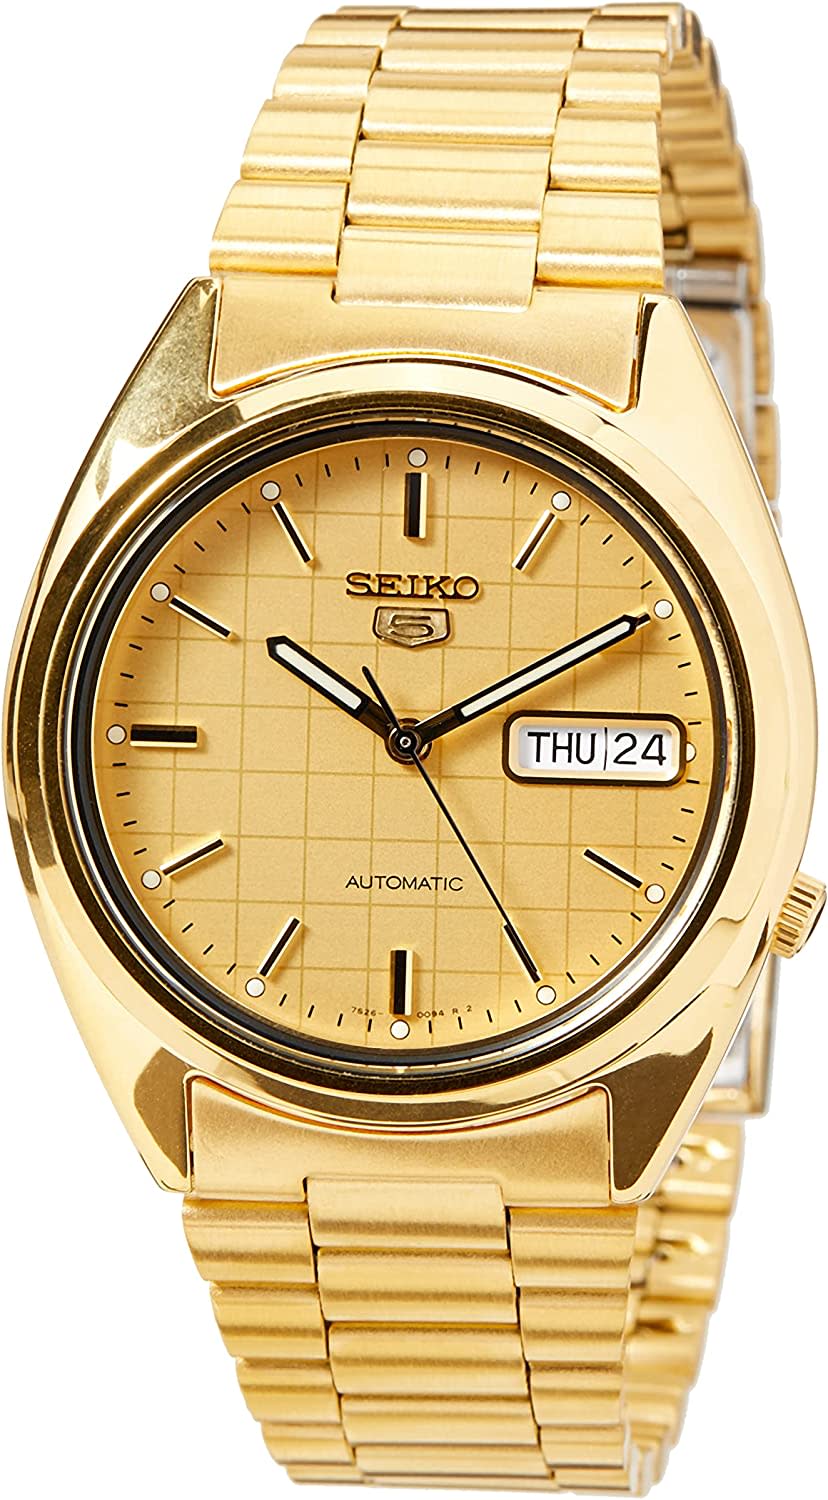 Seiko Men's SNXL72 Gold-Tone Stainless Steel Bracelet Watch. Image via Amazon.